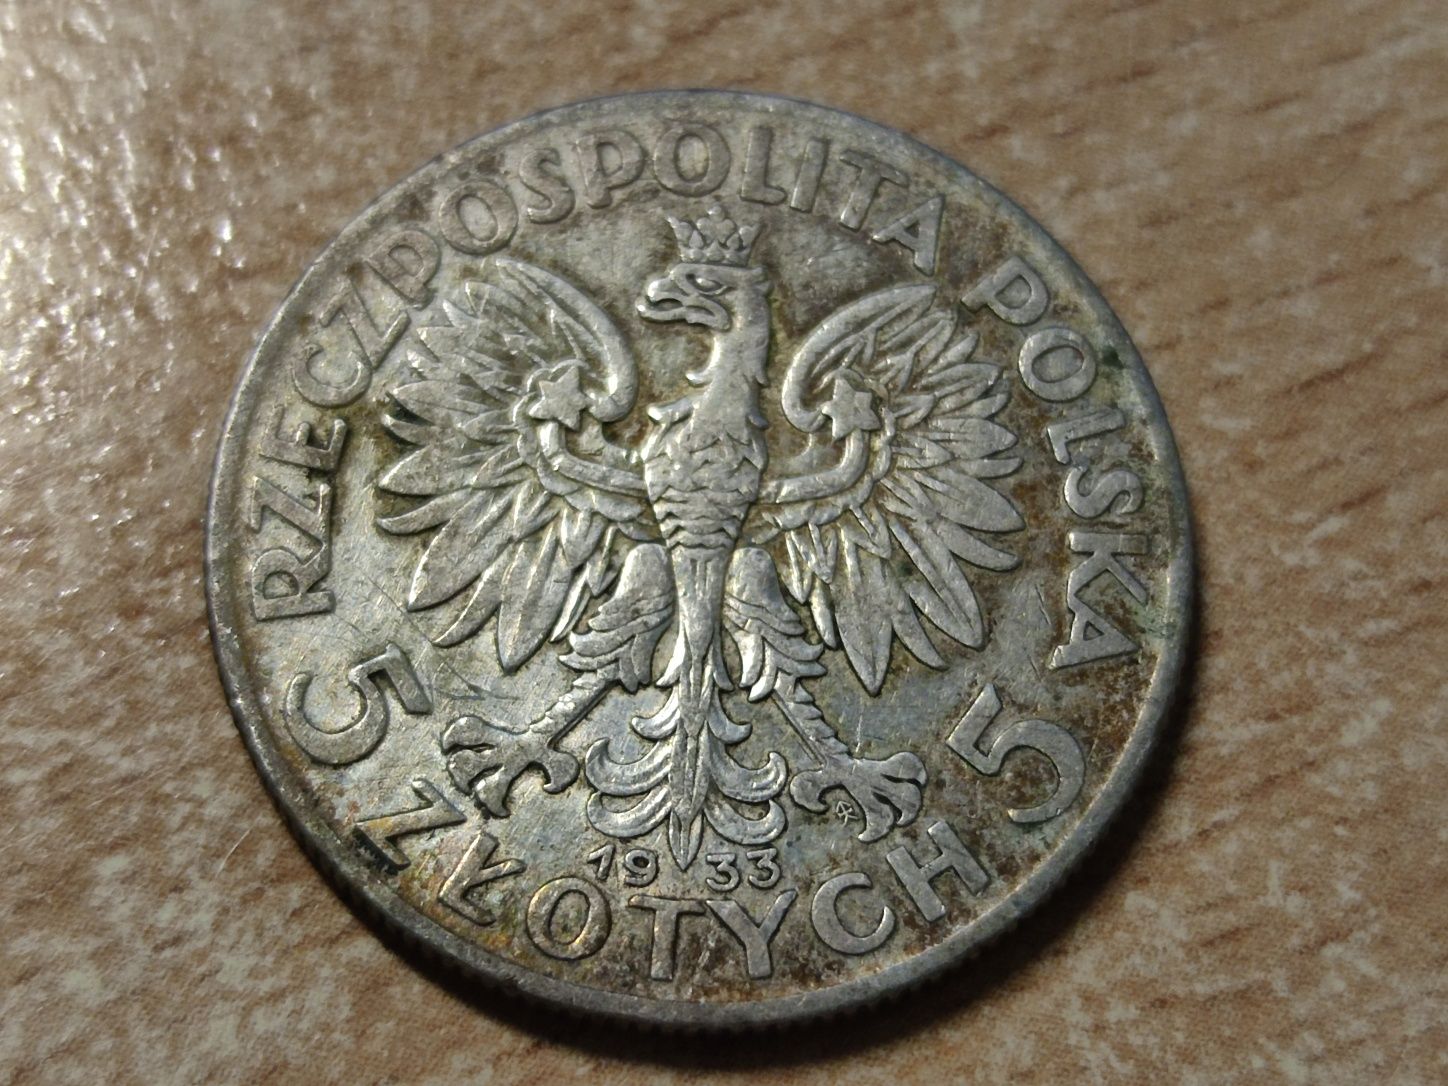 Moneta 5 złotych z 1933 roku